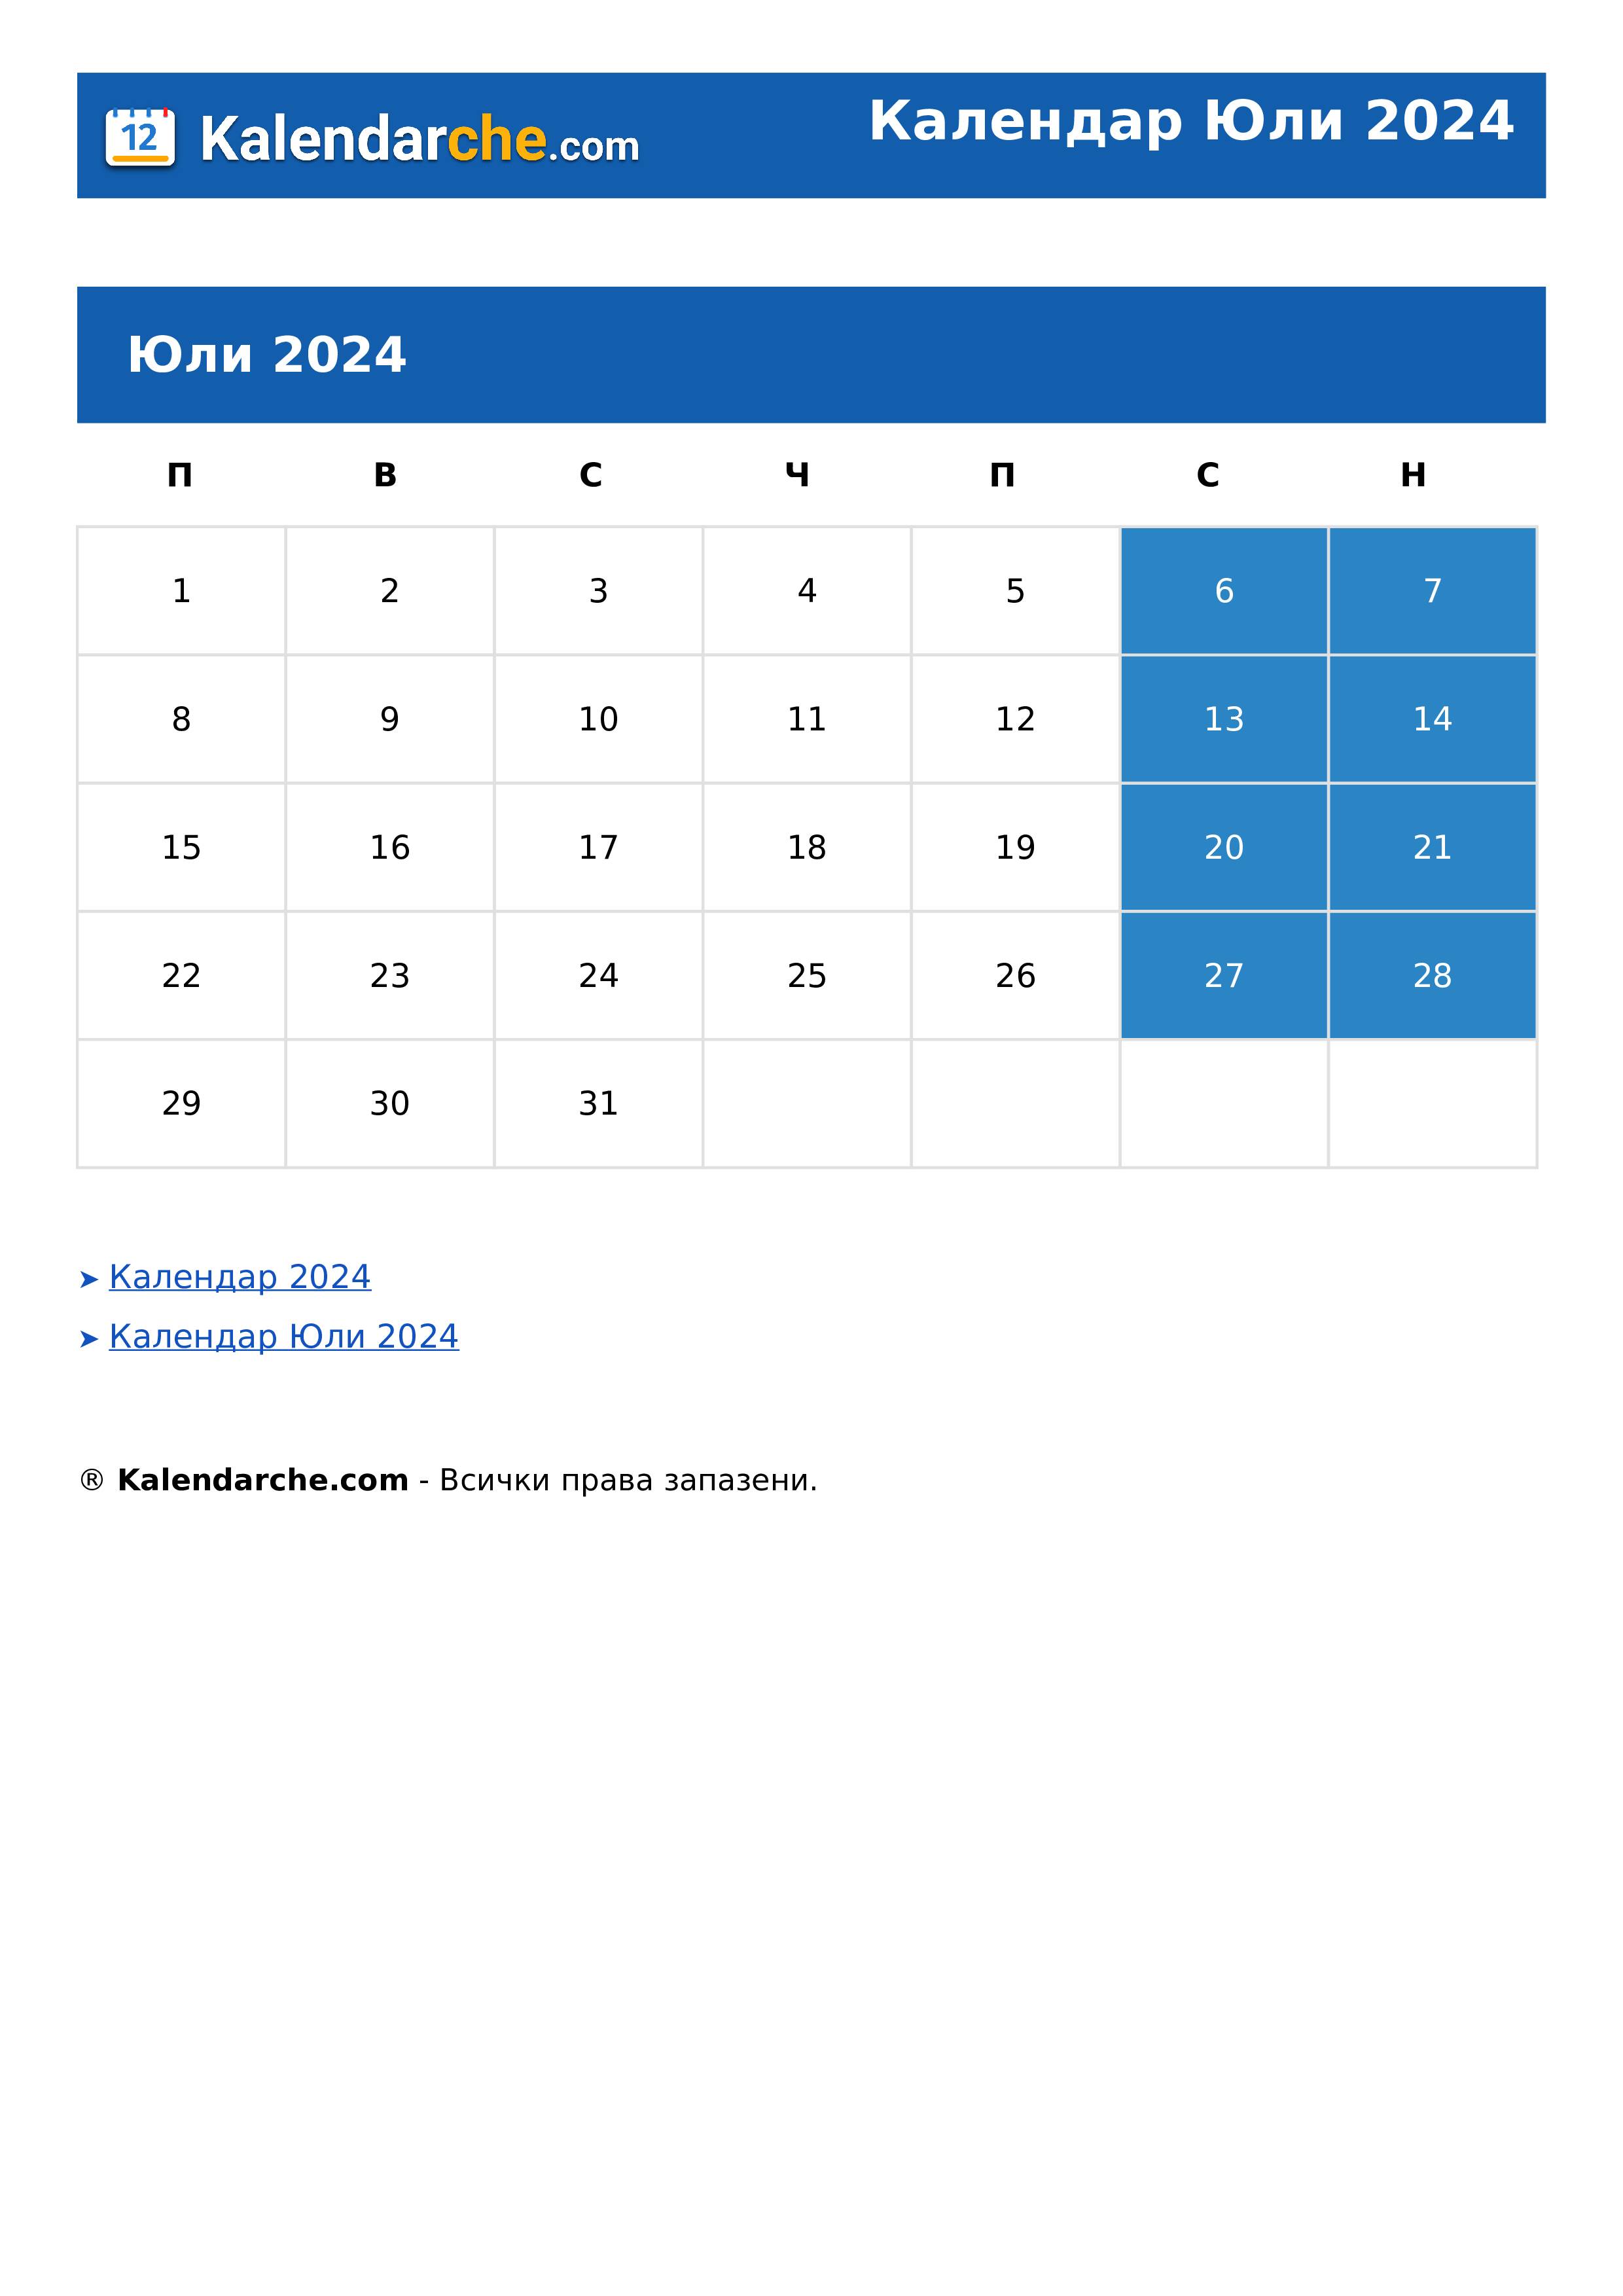 Календар Юли 2024